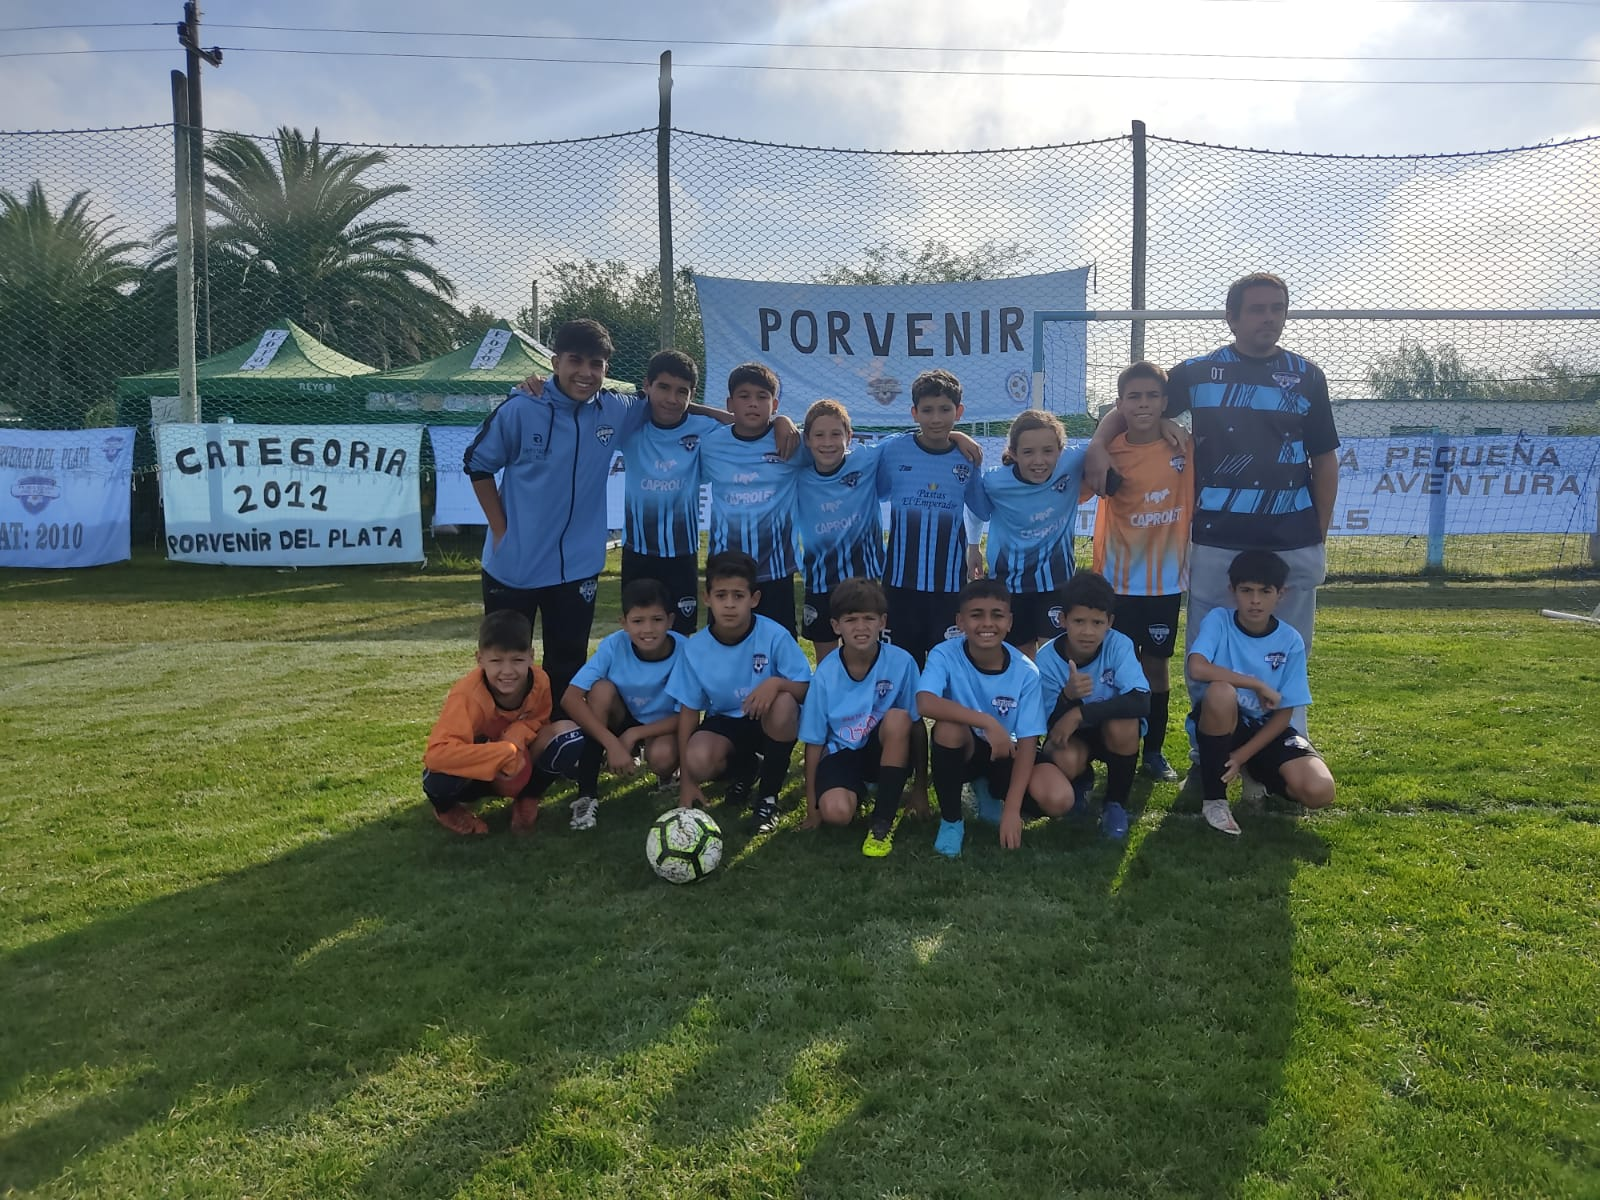 El Club Porvenir solicita colaboración para viajar a torneo de fútbol en Argentina